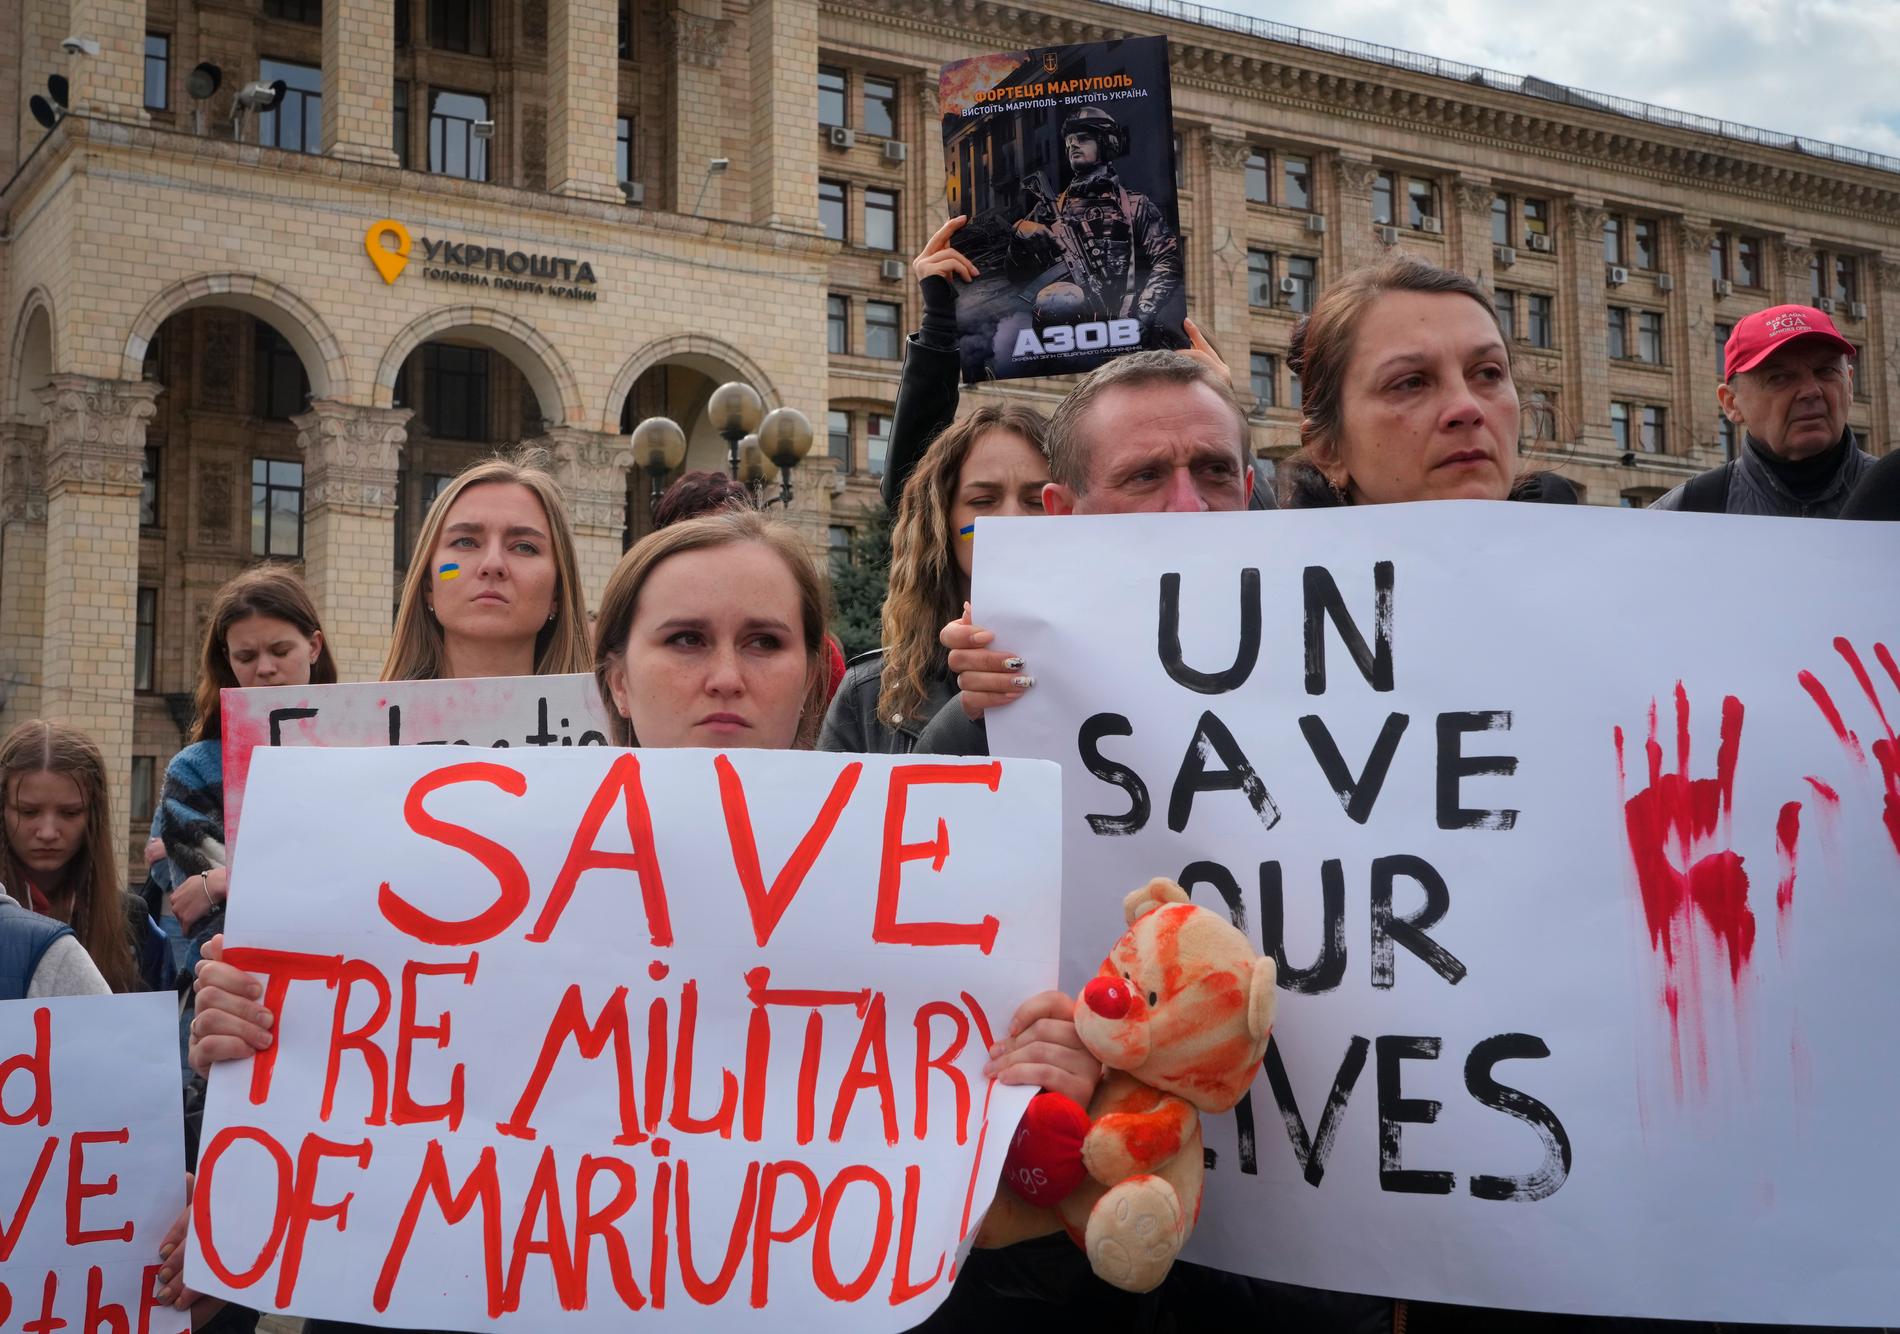 Tidigare i veckan samlades anhöriga till människor fast i Mariupol för att demonstrera. ”FN rädda våra liv” står skrivet på en av skyltarna.